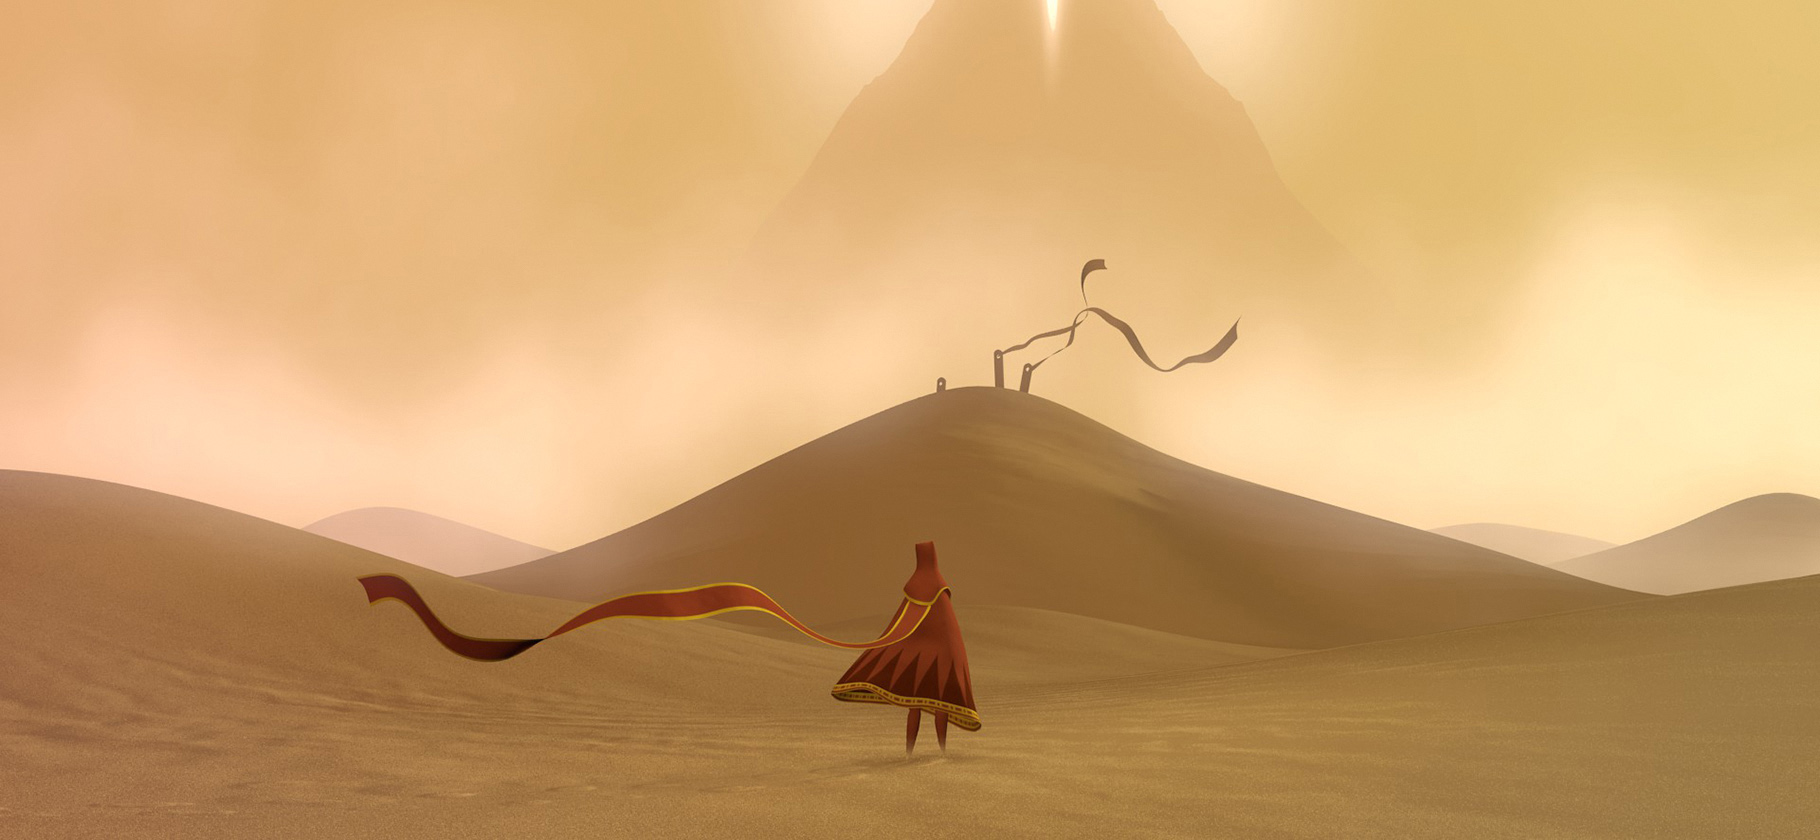 Epic journey. Journey игра thatgamecompany. Journey (игра, 2012). Пустыня из трёх богатырей. Journey красота.